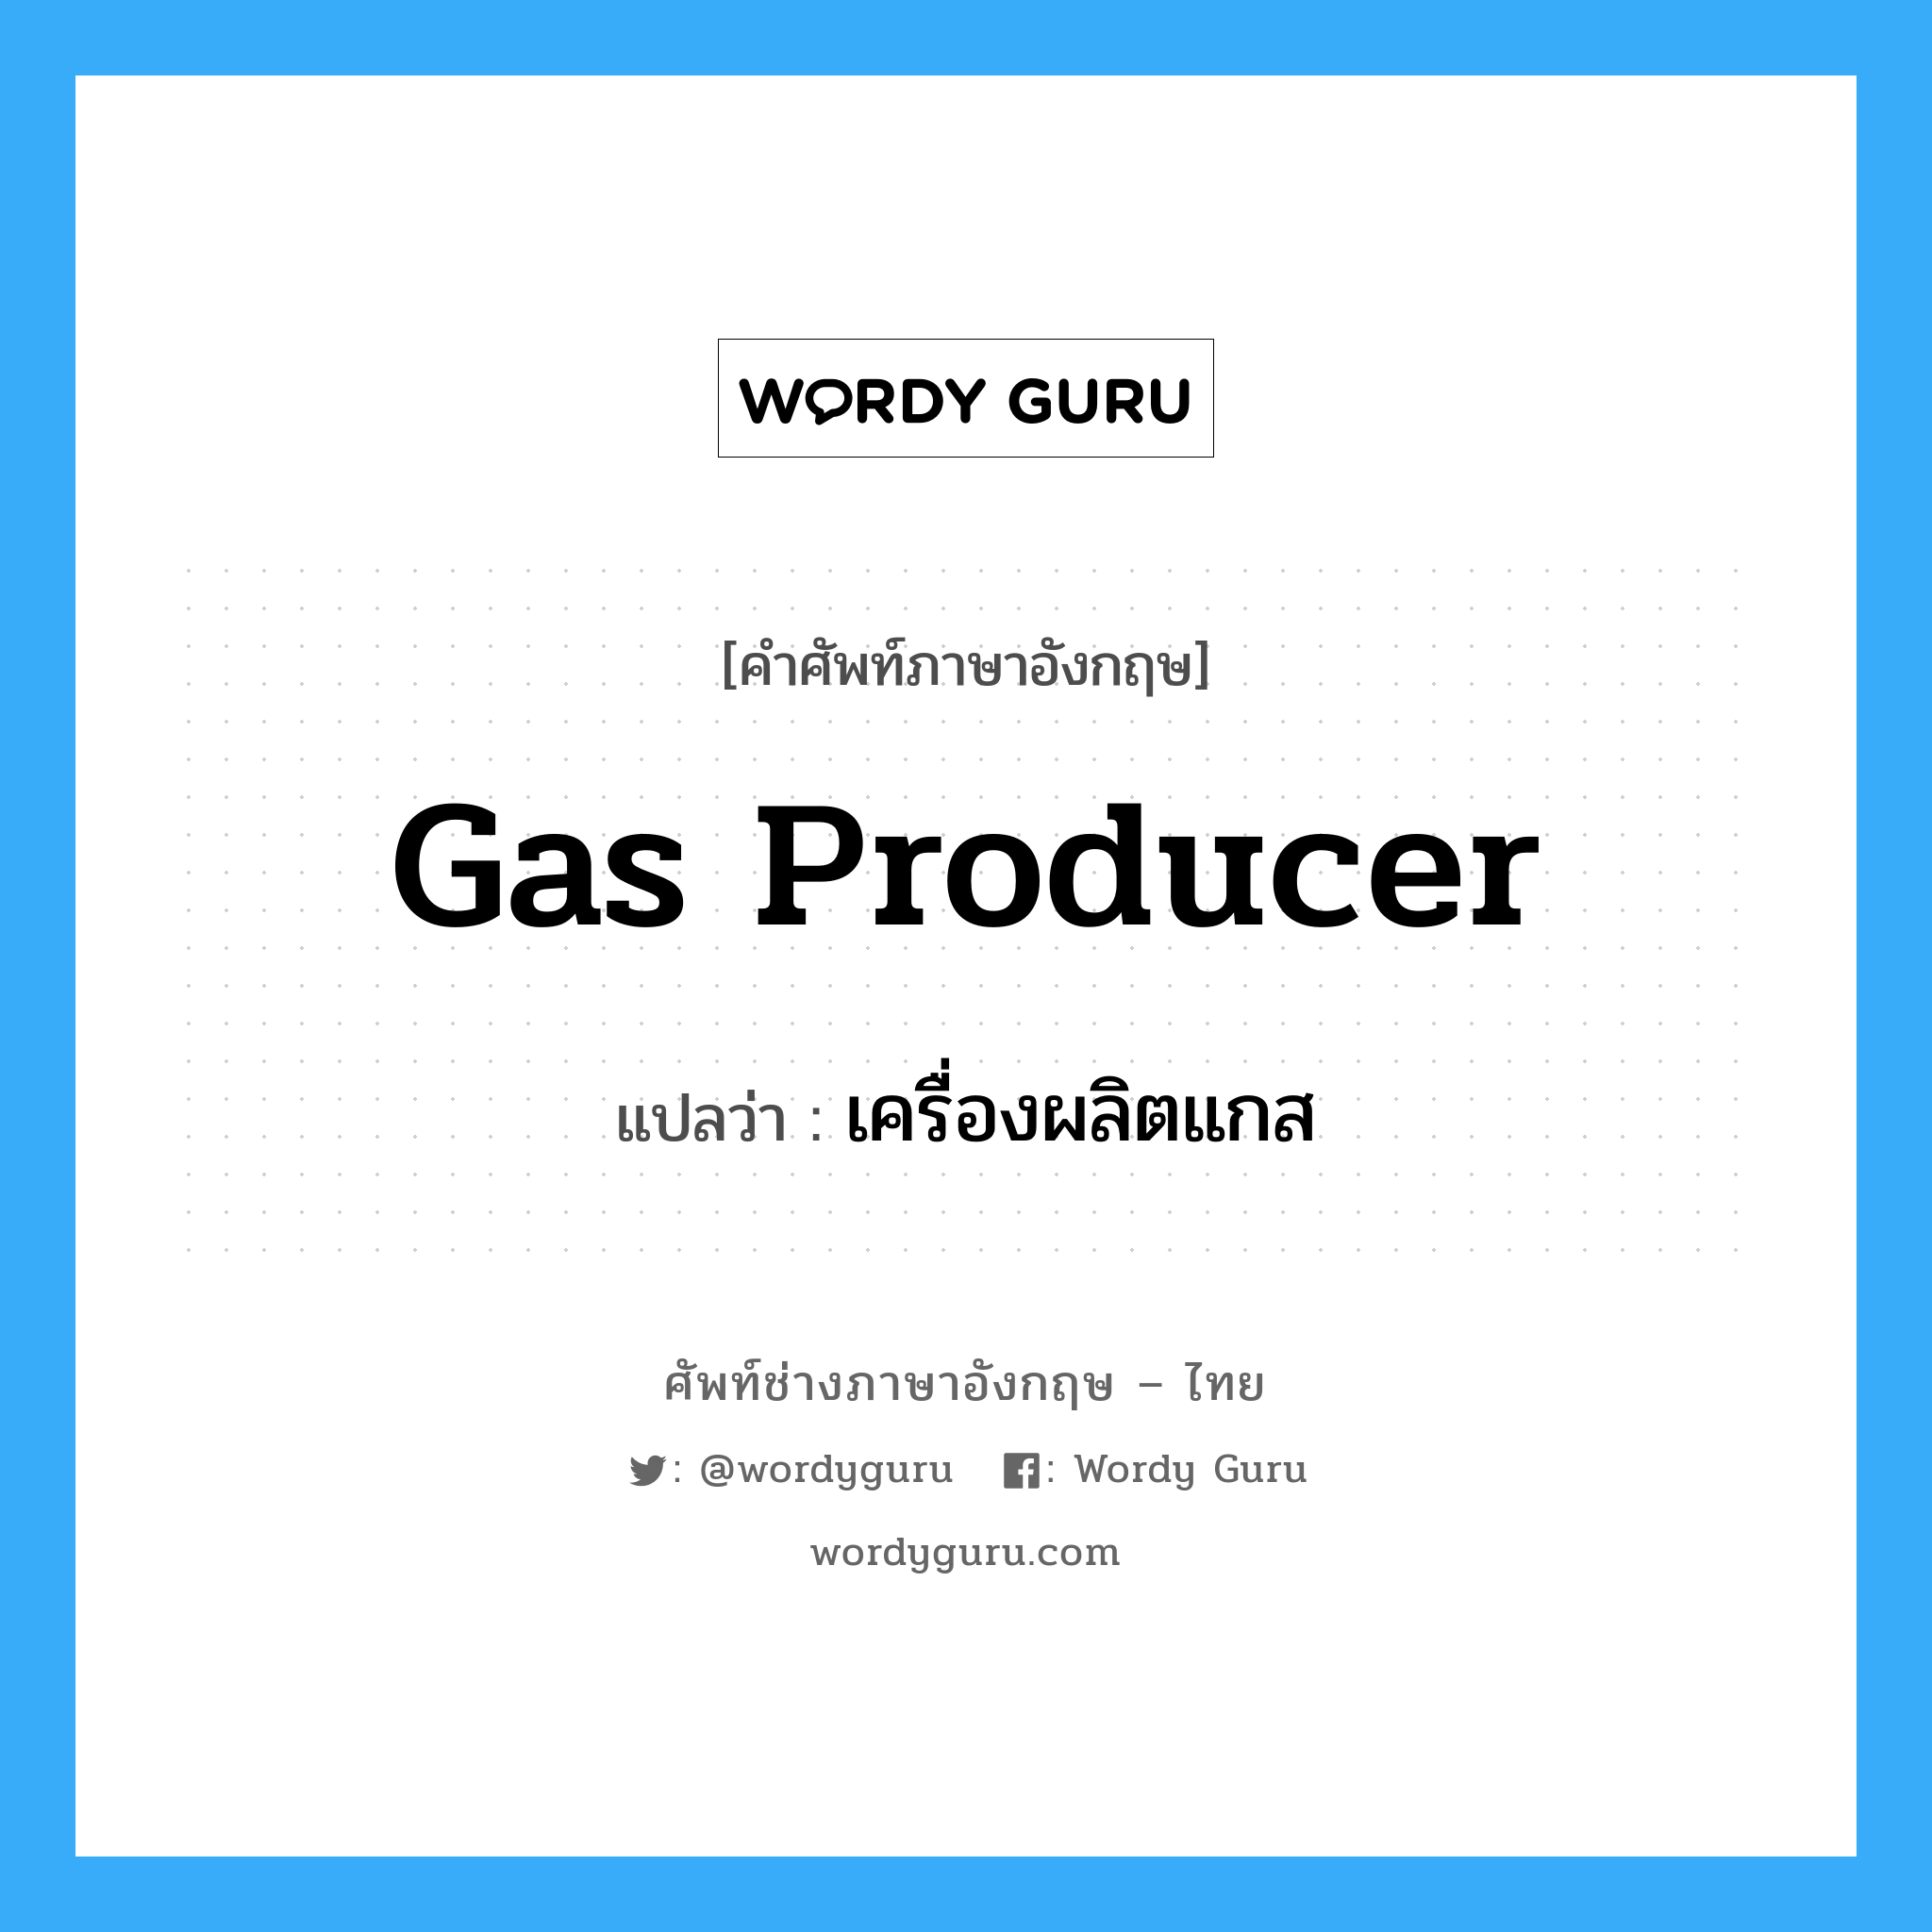 gas producer แปลว่า?, คำศัพท์ช่างภาษาอังกฤษ - ไทย gas producer คำศัพท์ภาษาอังกฤษ gas producer แปลว่า เครื่องผลิตแกส